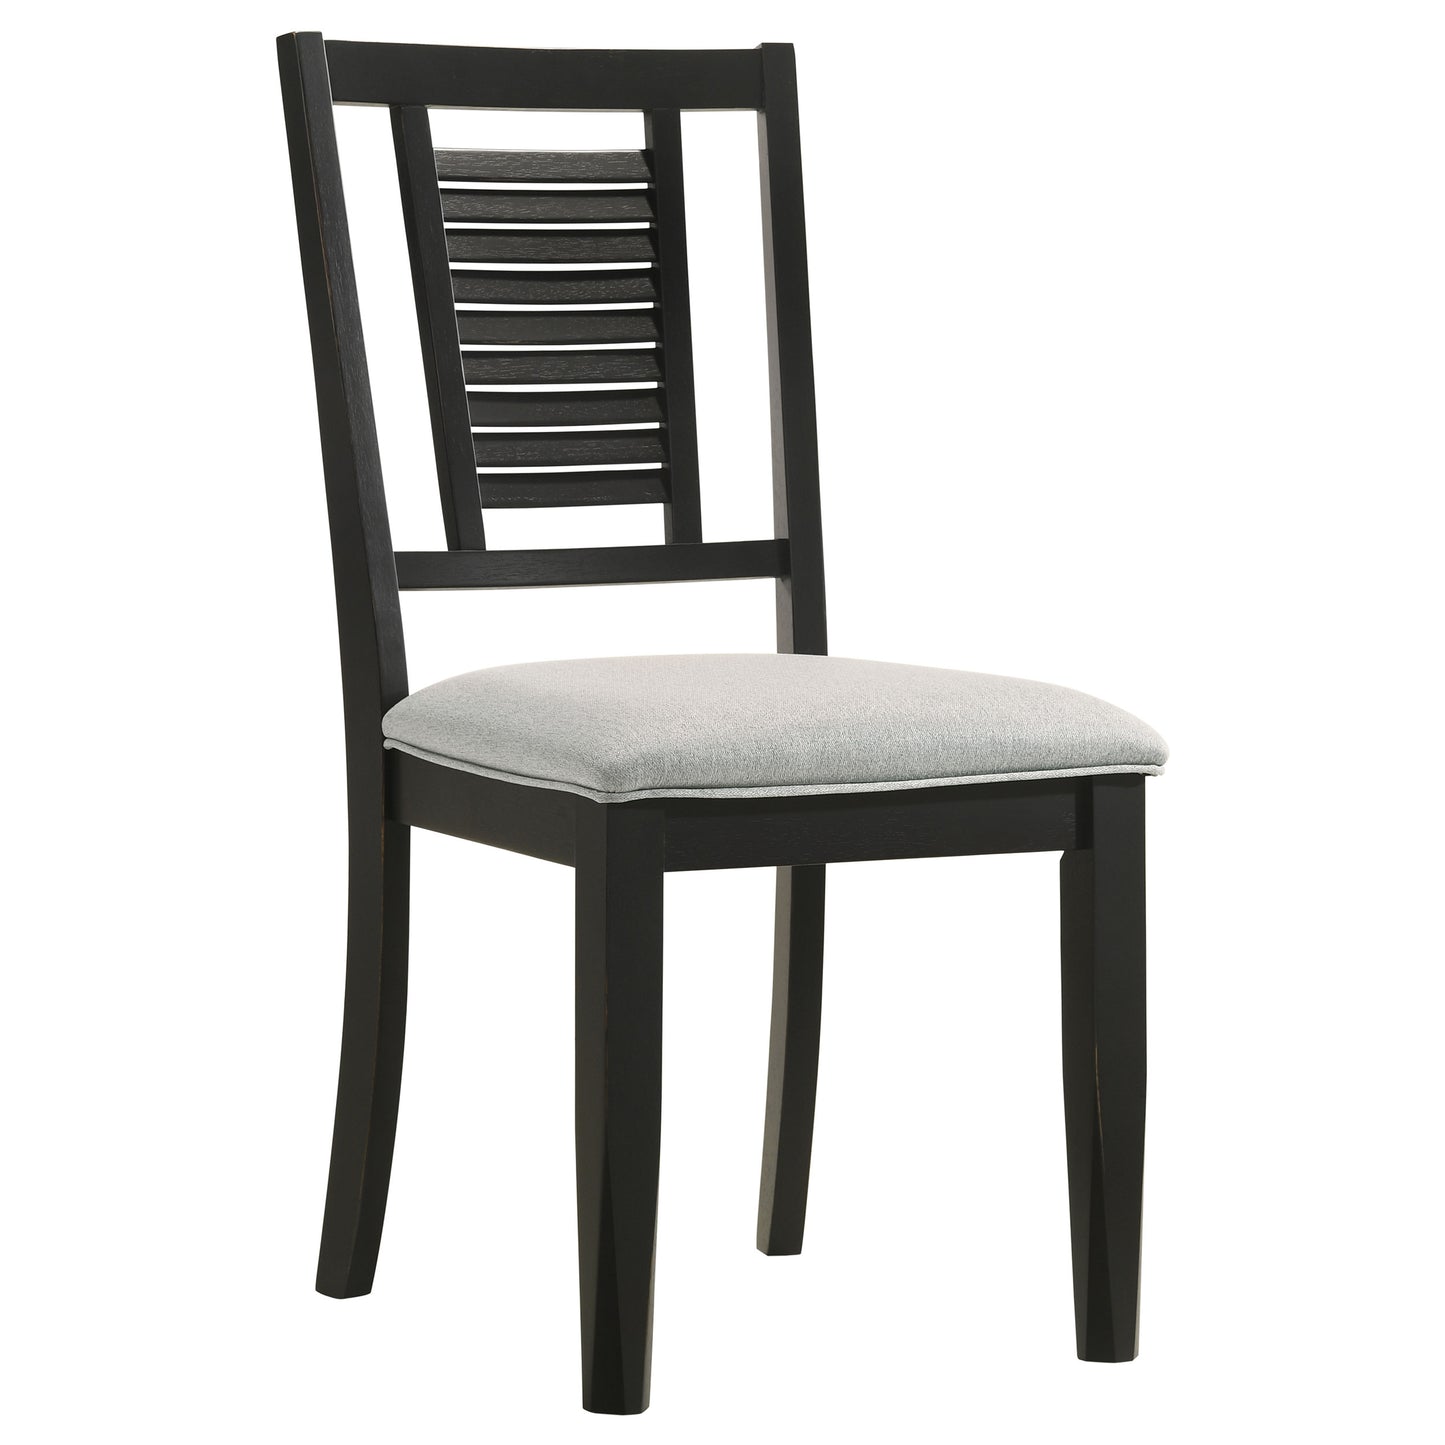 Appleton Ladder Back Dining Side Chair Black Washed and Light Grey (Set of 2)